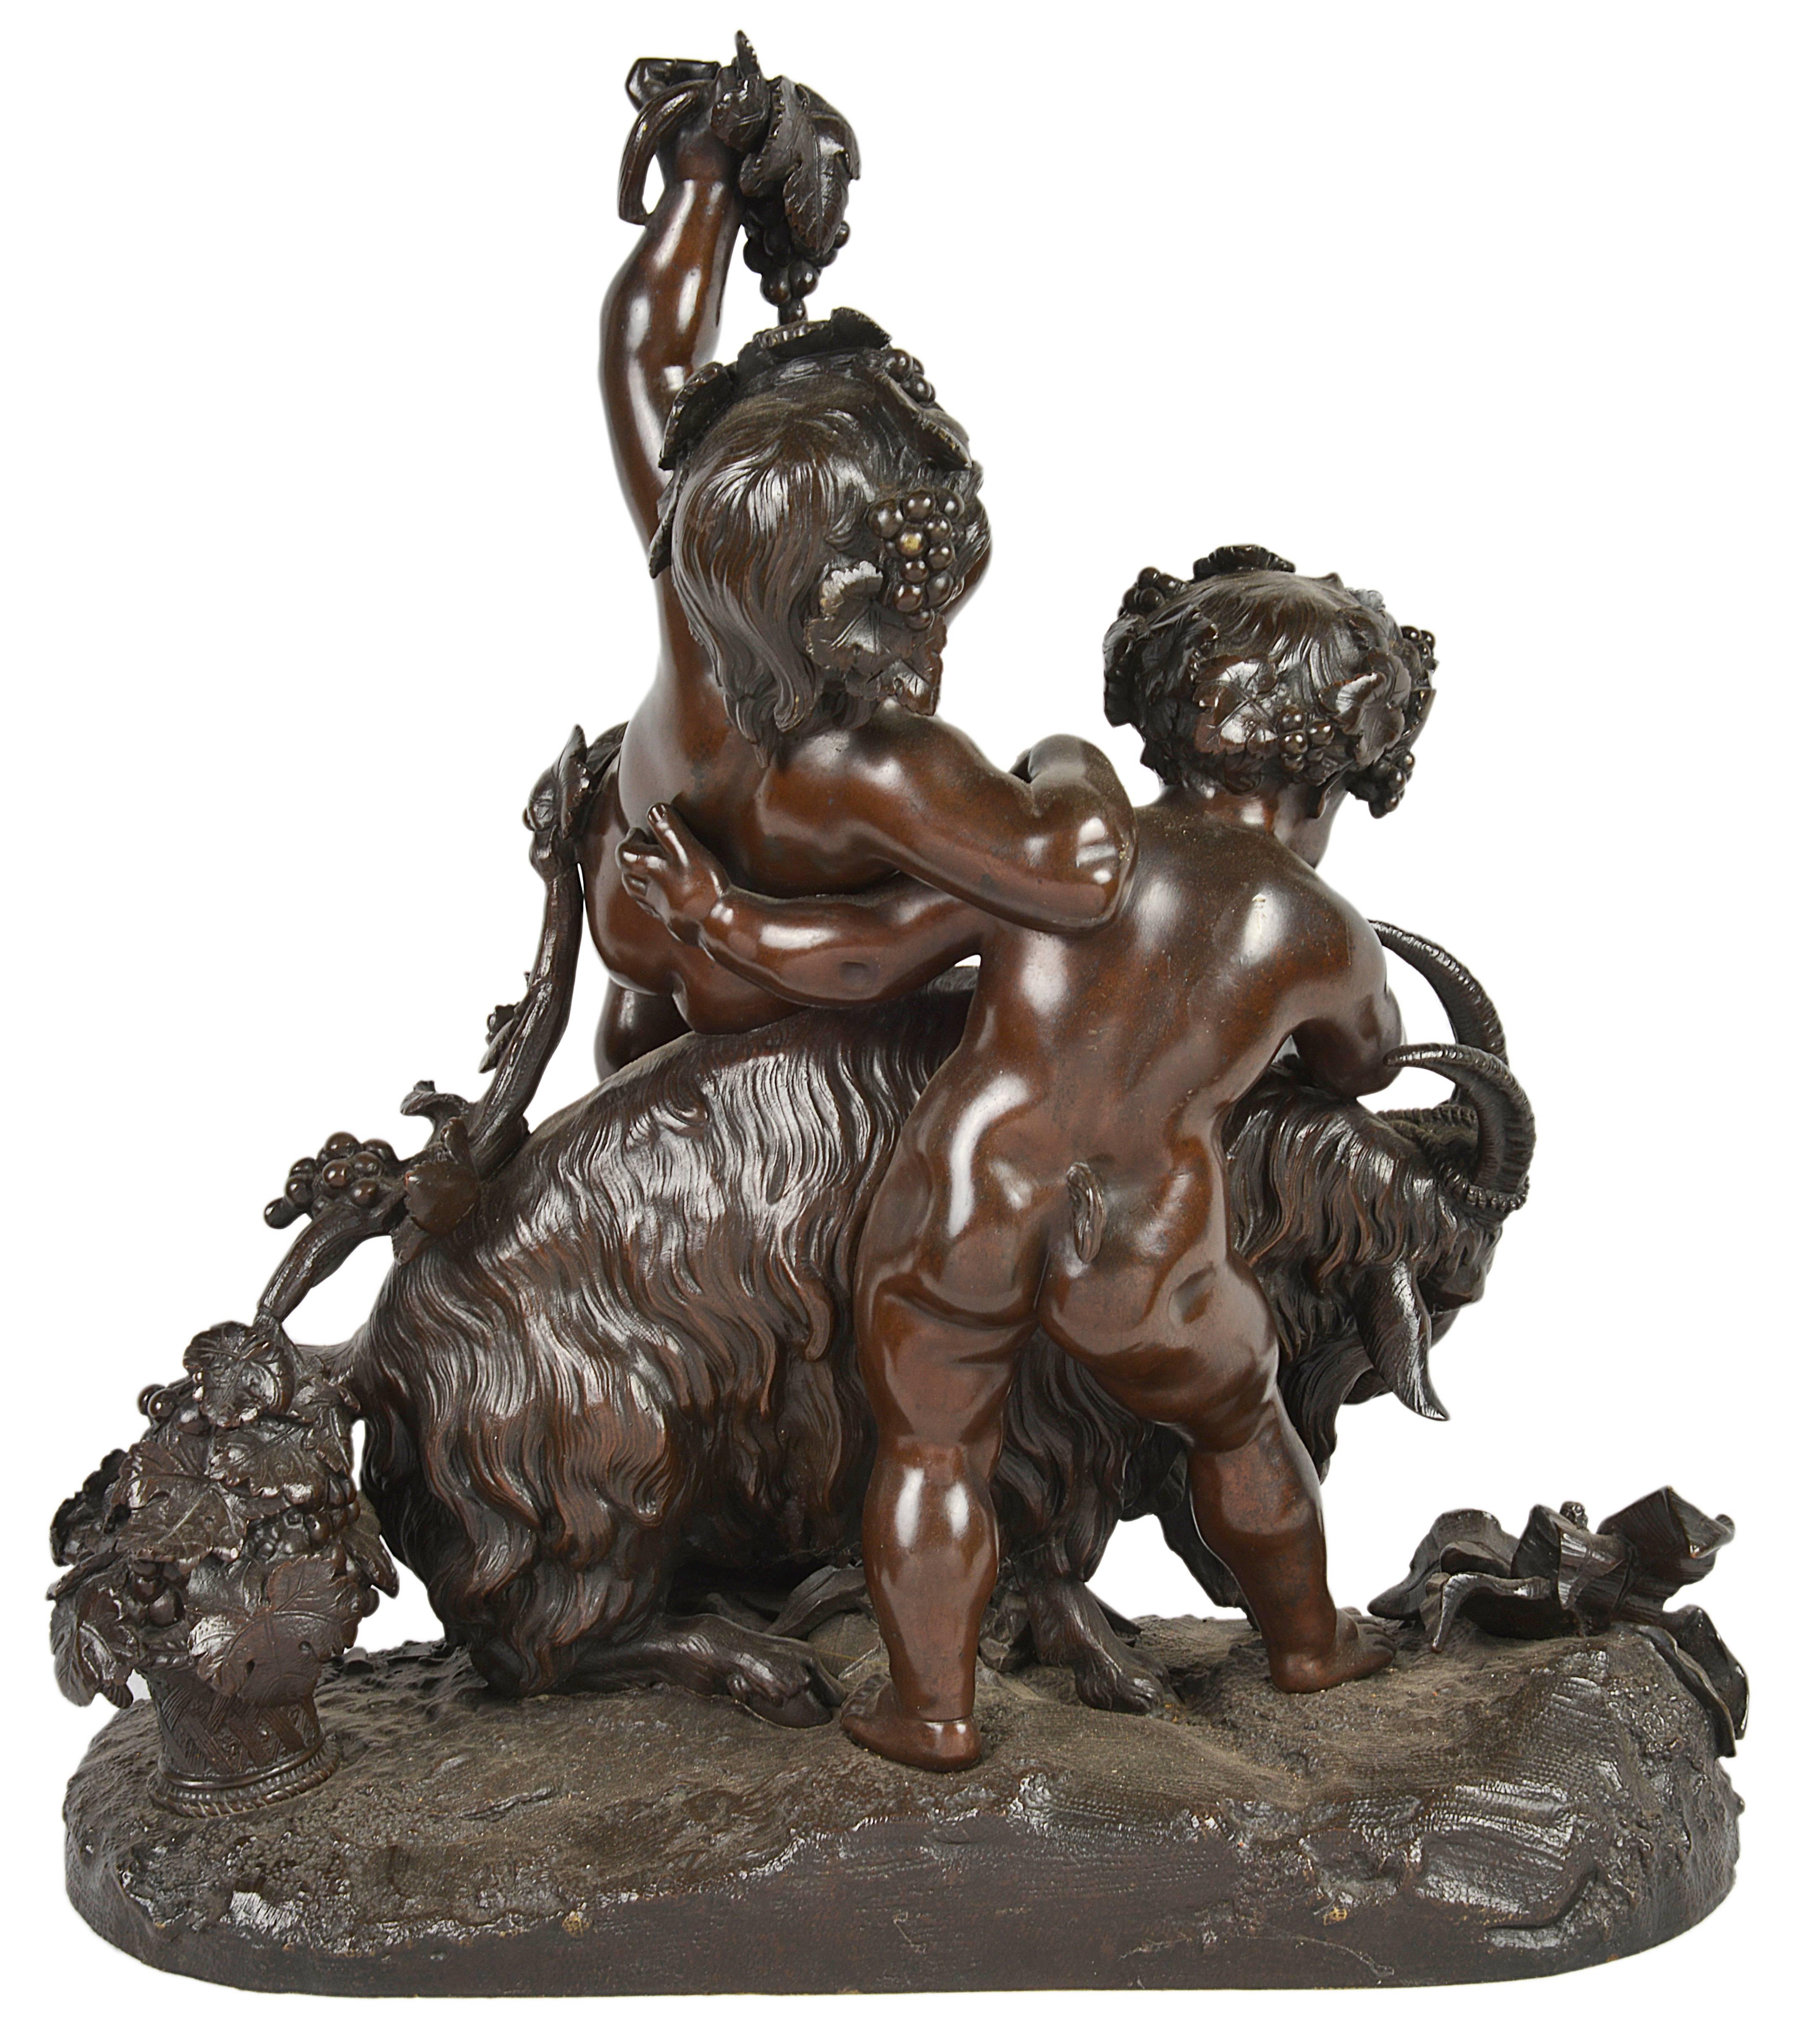 Très beau groupe en bronze du XIXe siècle, influencé par Bacchus, représentant deux putti jouant avec un bélier, des guirlandes de feuilles de vigne et des raisins.
Signé.